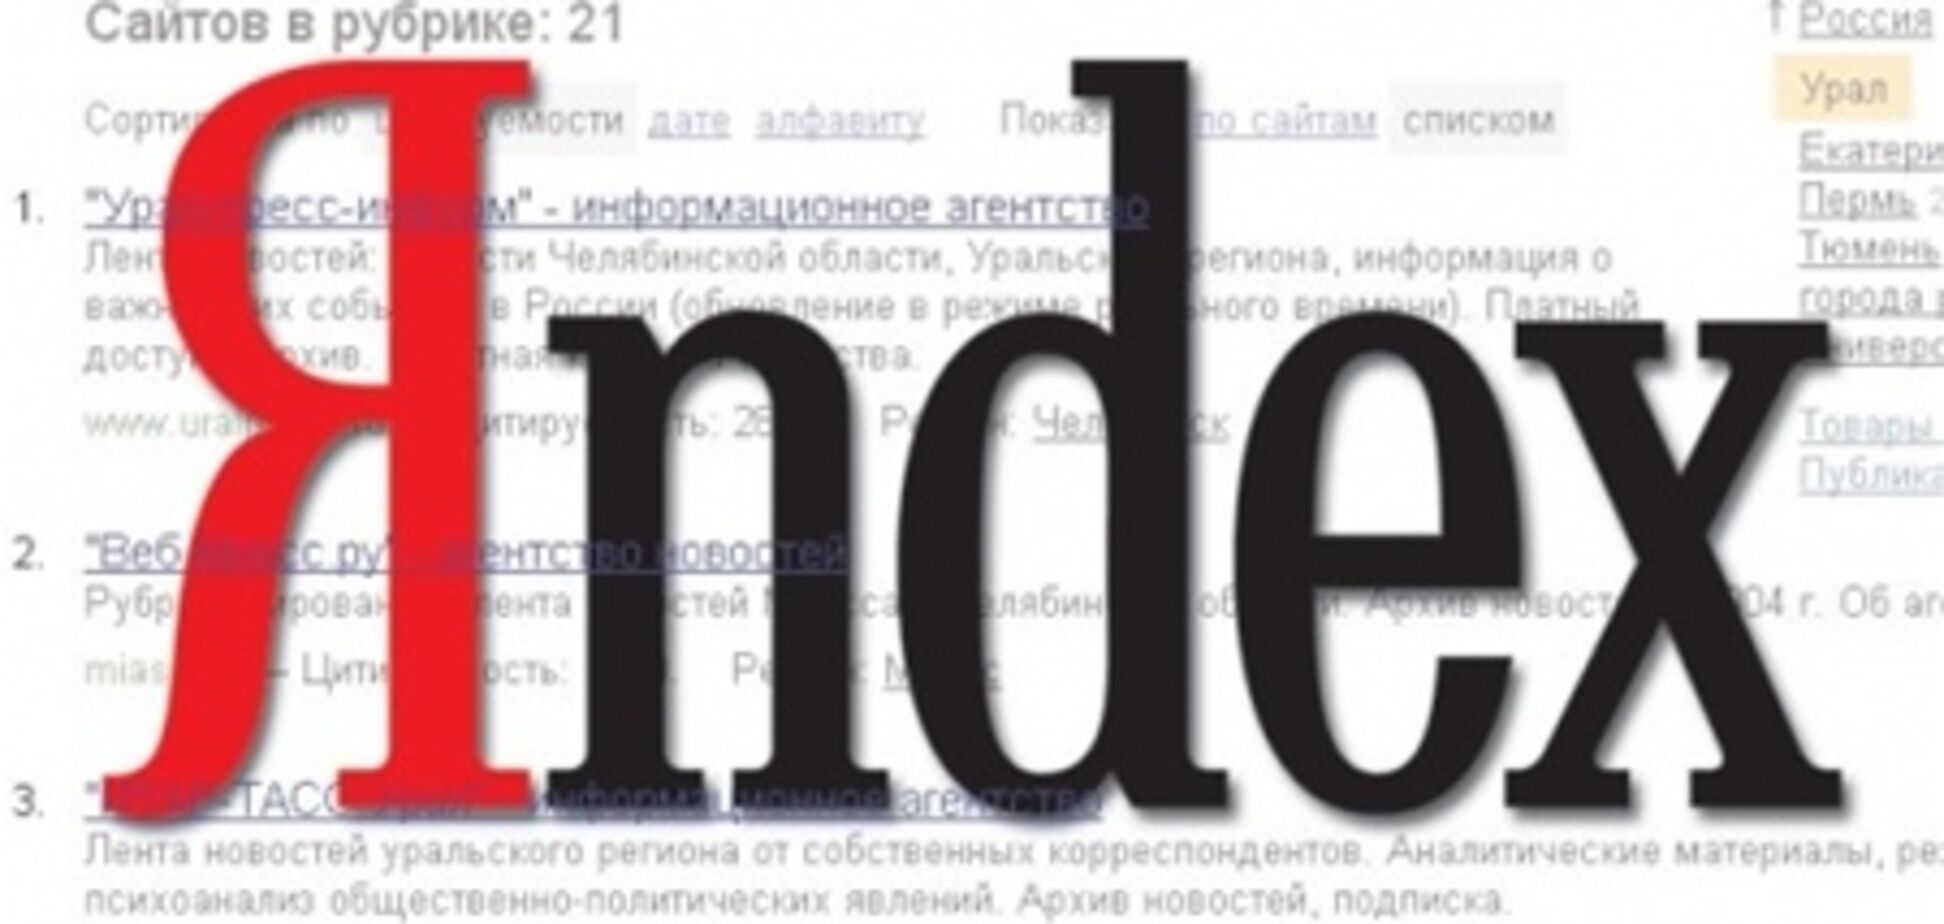 Панорамы на Яндекс.Картах стали доступны на мобильных телефонах